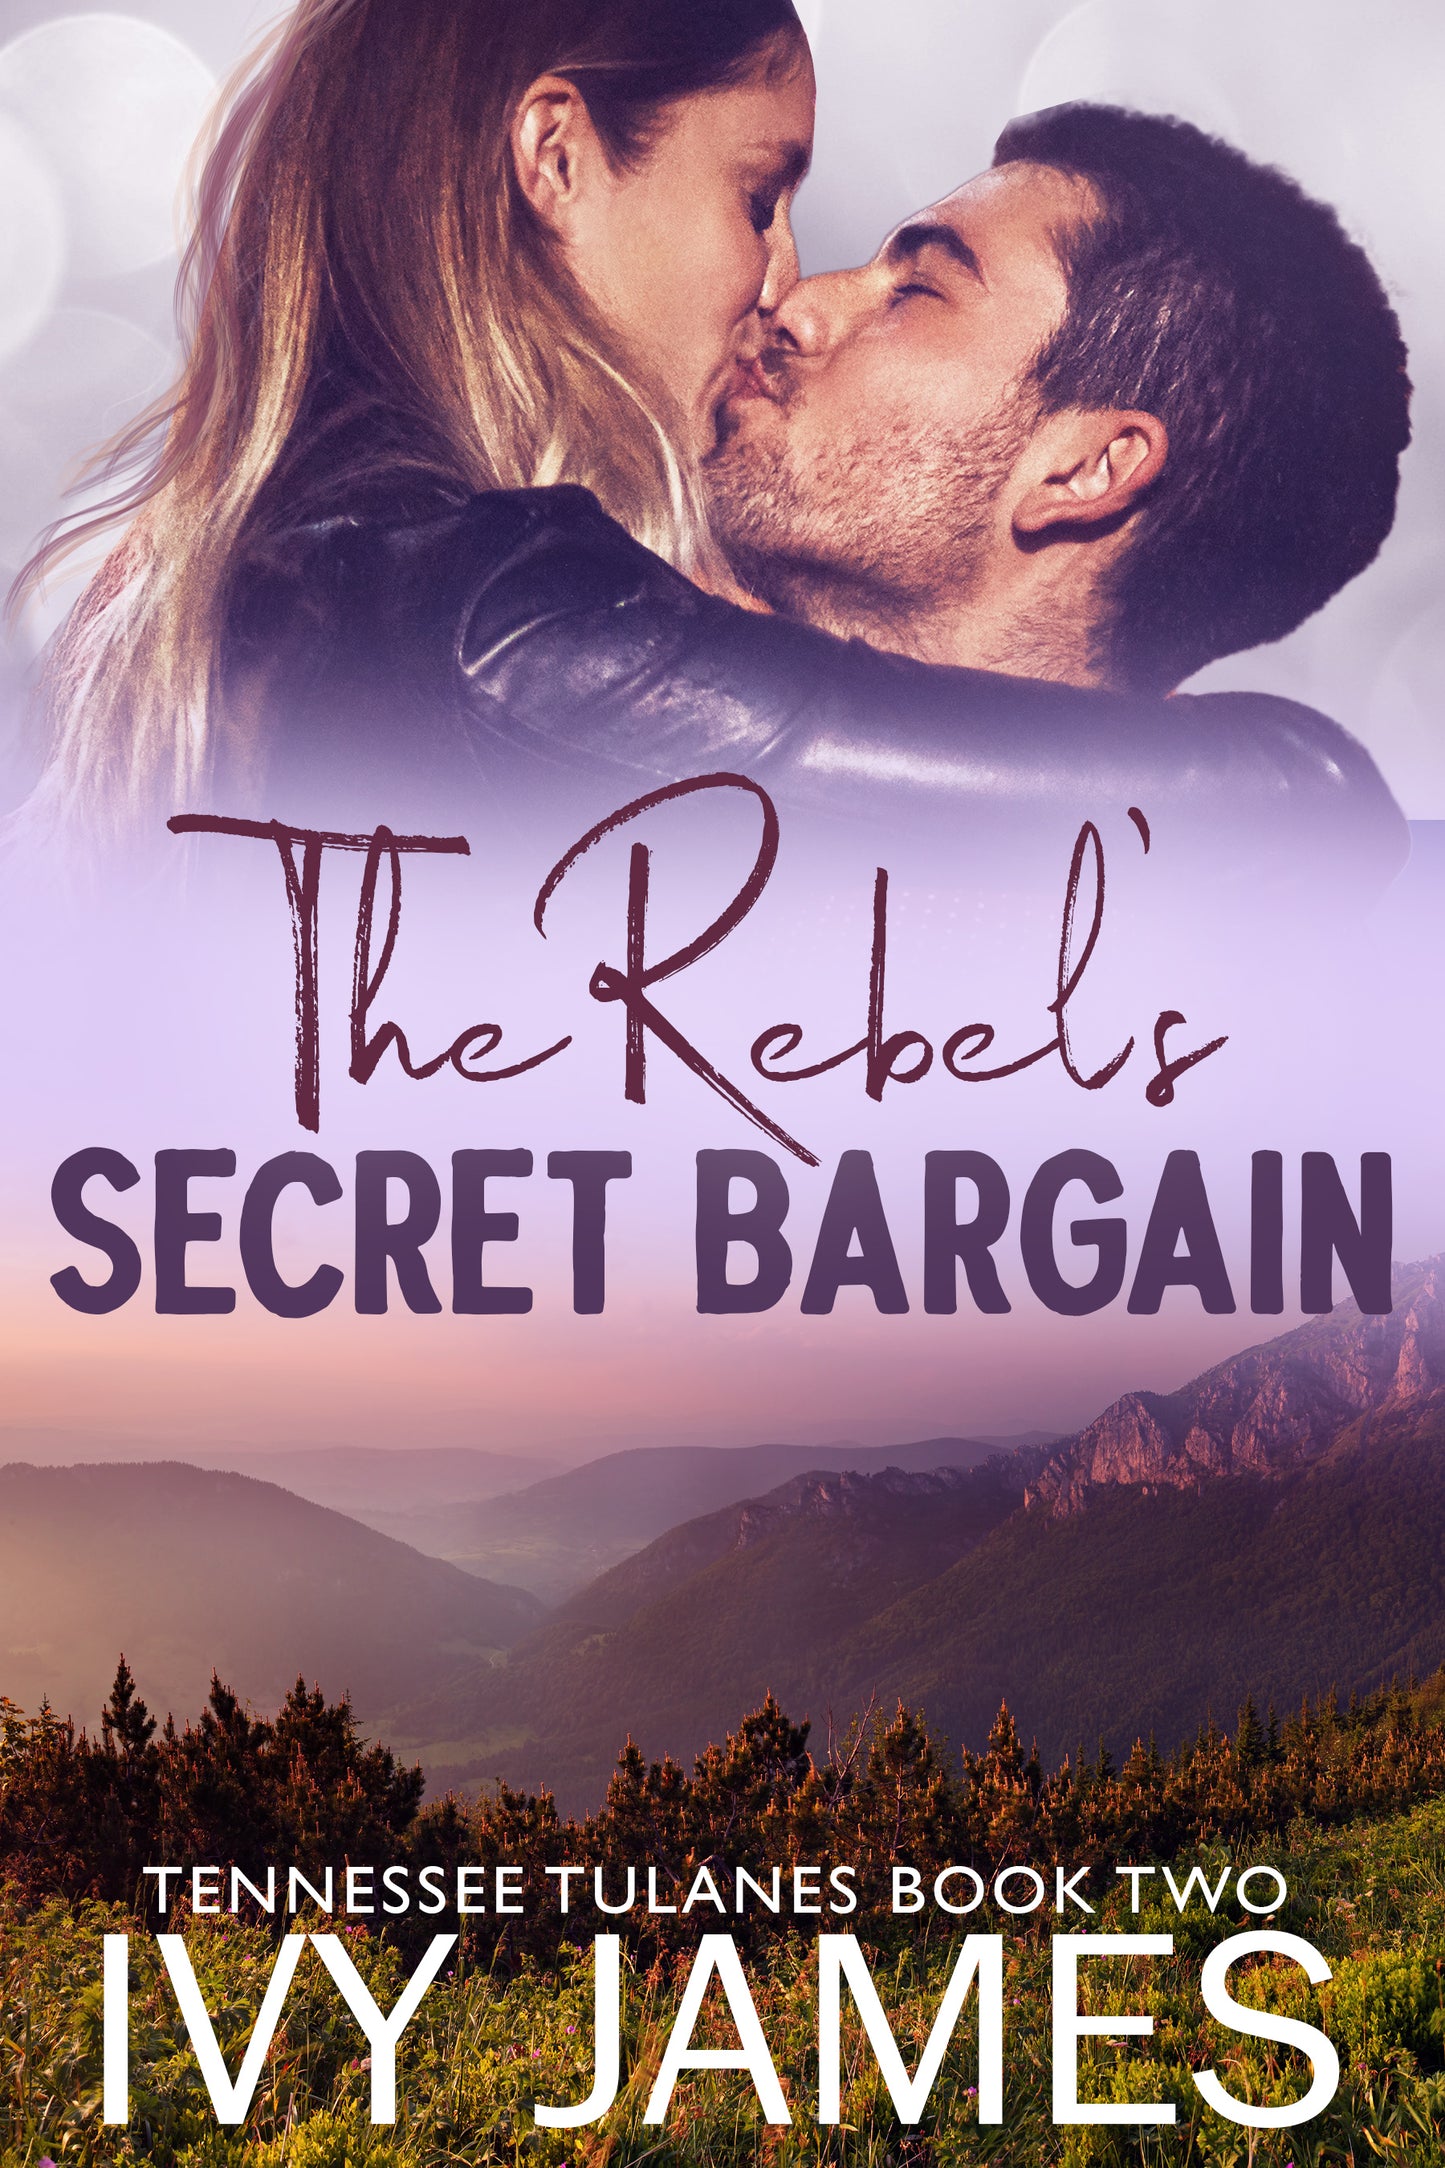 The Rebel's Secret Bargain